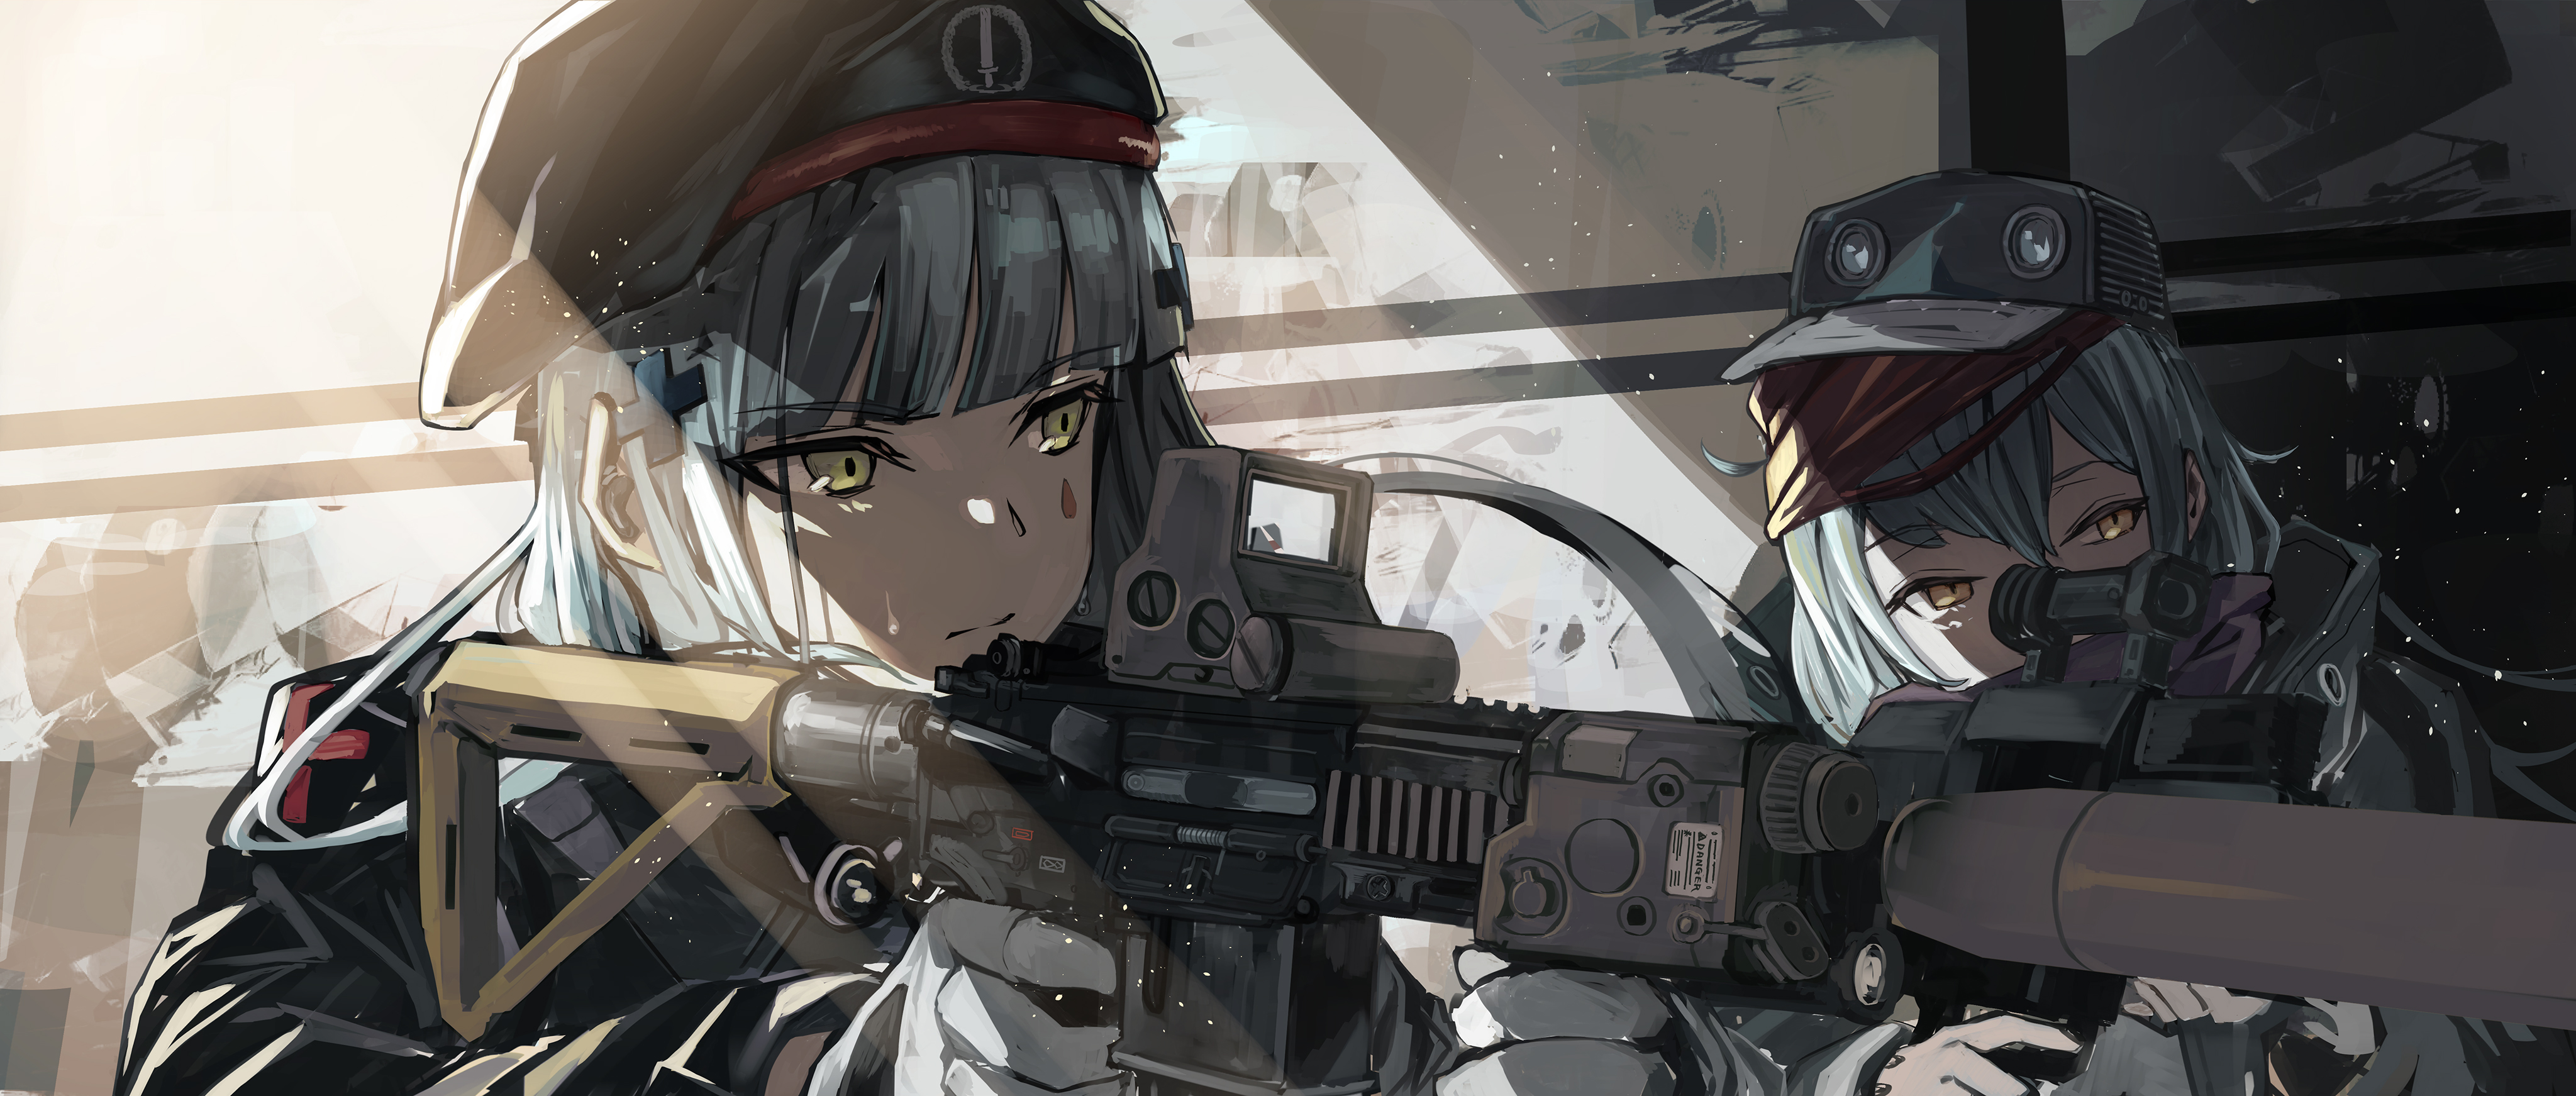 Anime Military Girl Wallpapers